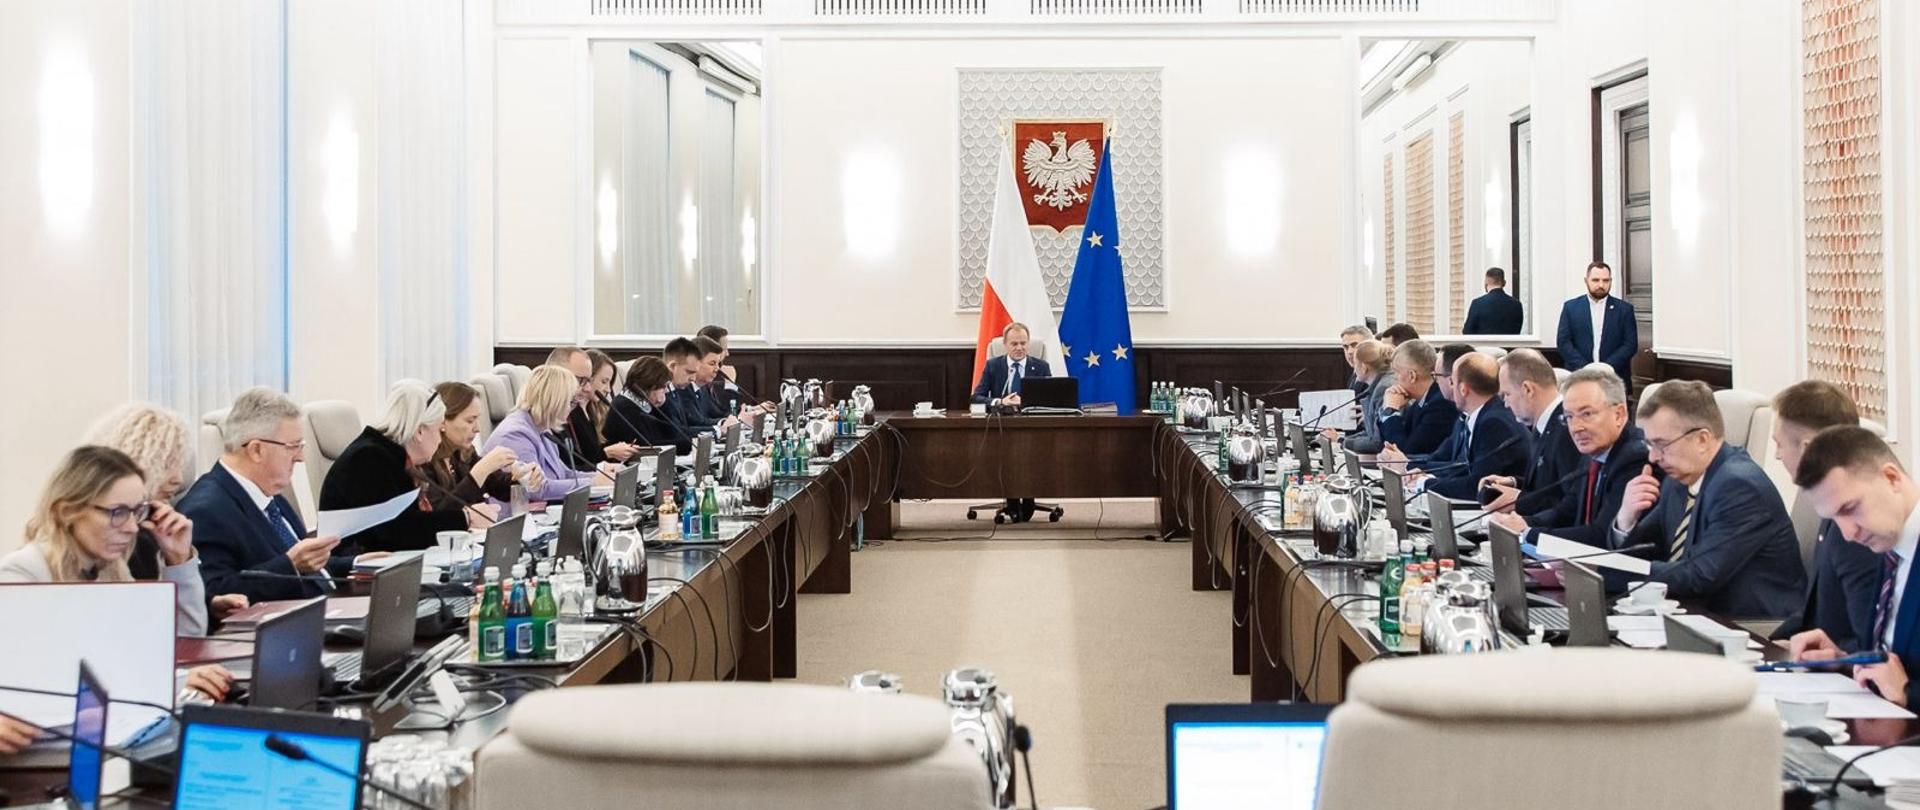 Posiedzenie Rady Ministrów pod przewodnictwem premiera Donalda Tuska.